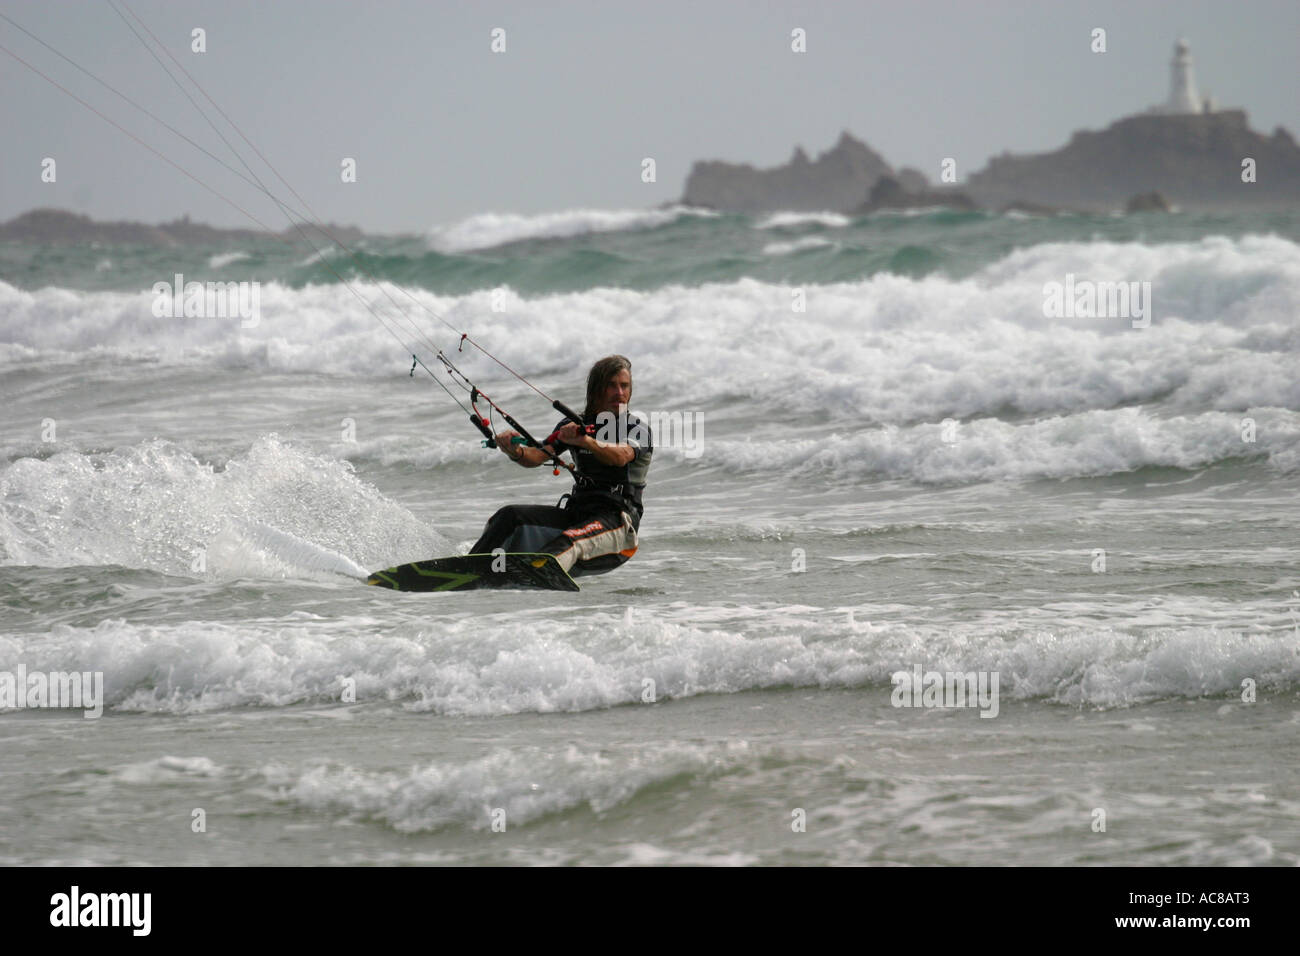 Markieren Sie Chatel, geboren und aufgewachsen in Jersey - Kitesurfen - Kitesurf St Ouen fünf Meile Strand Jersey Stockfoto